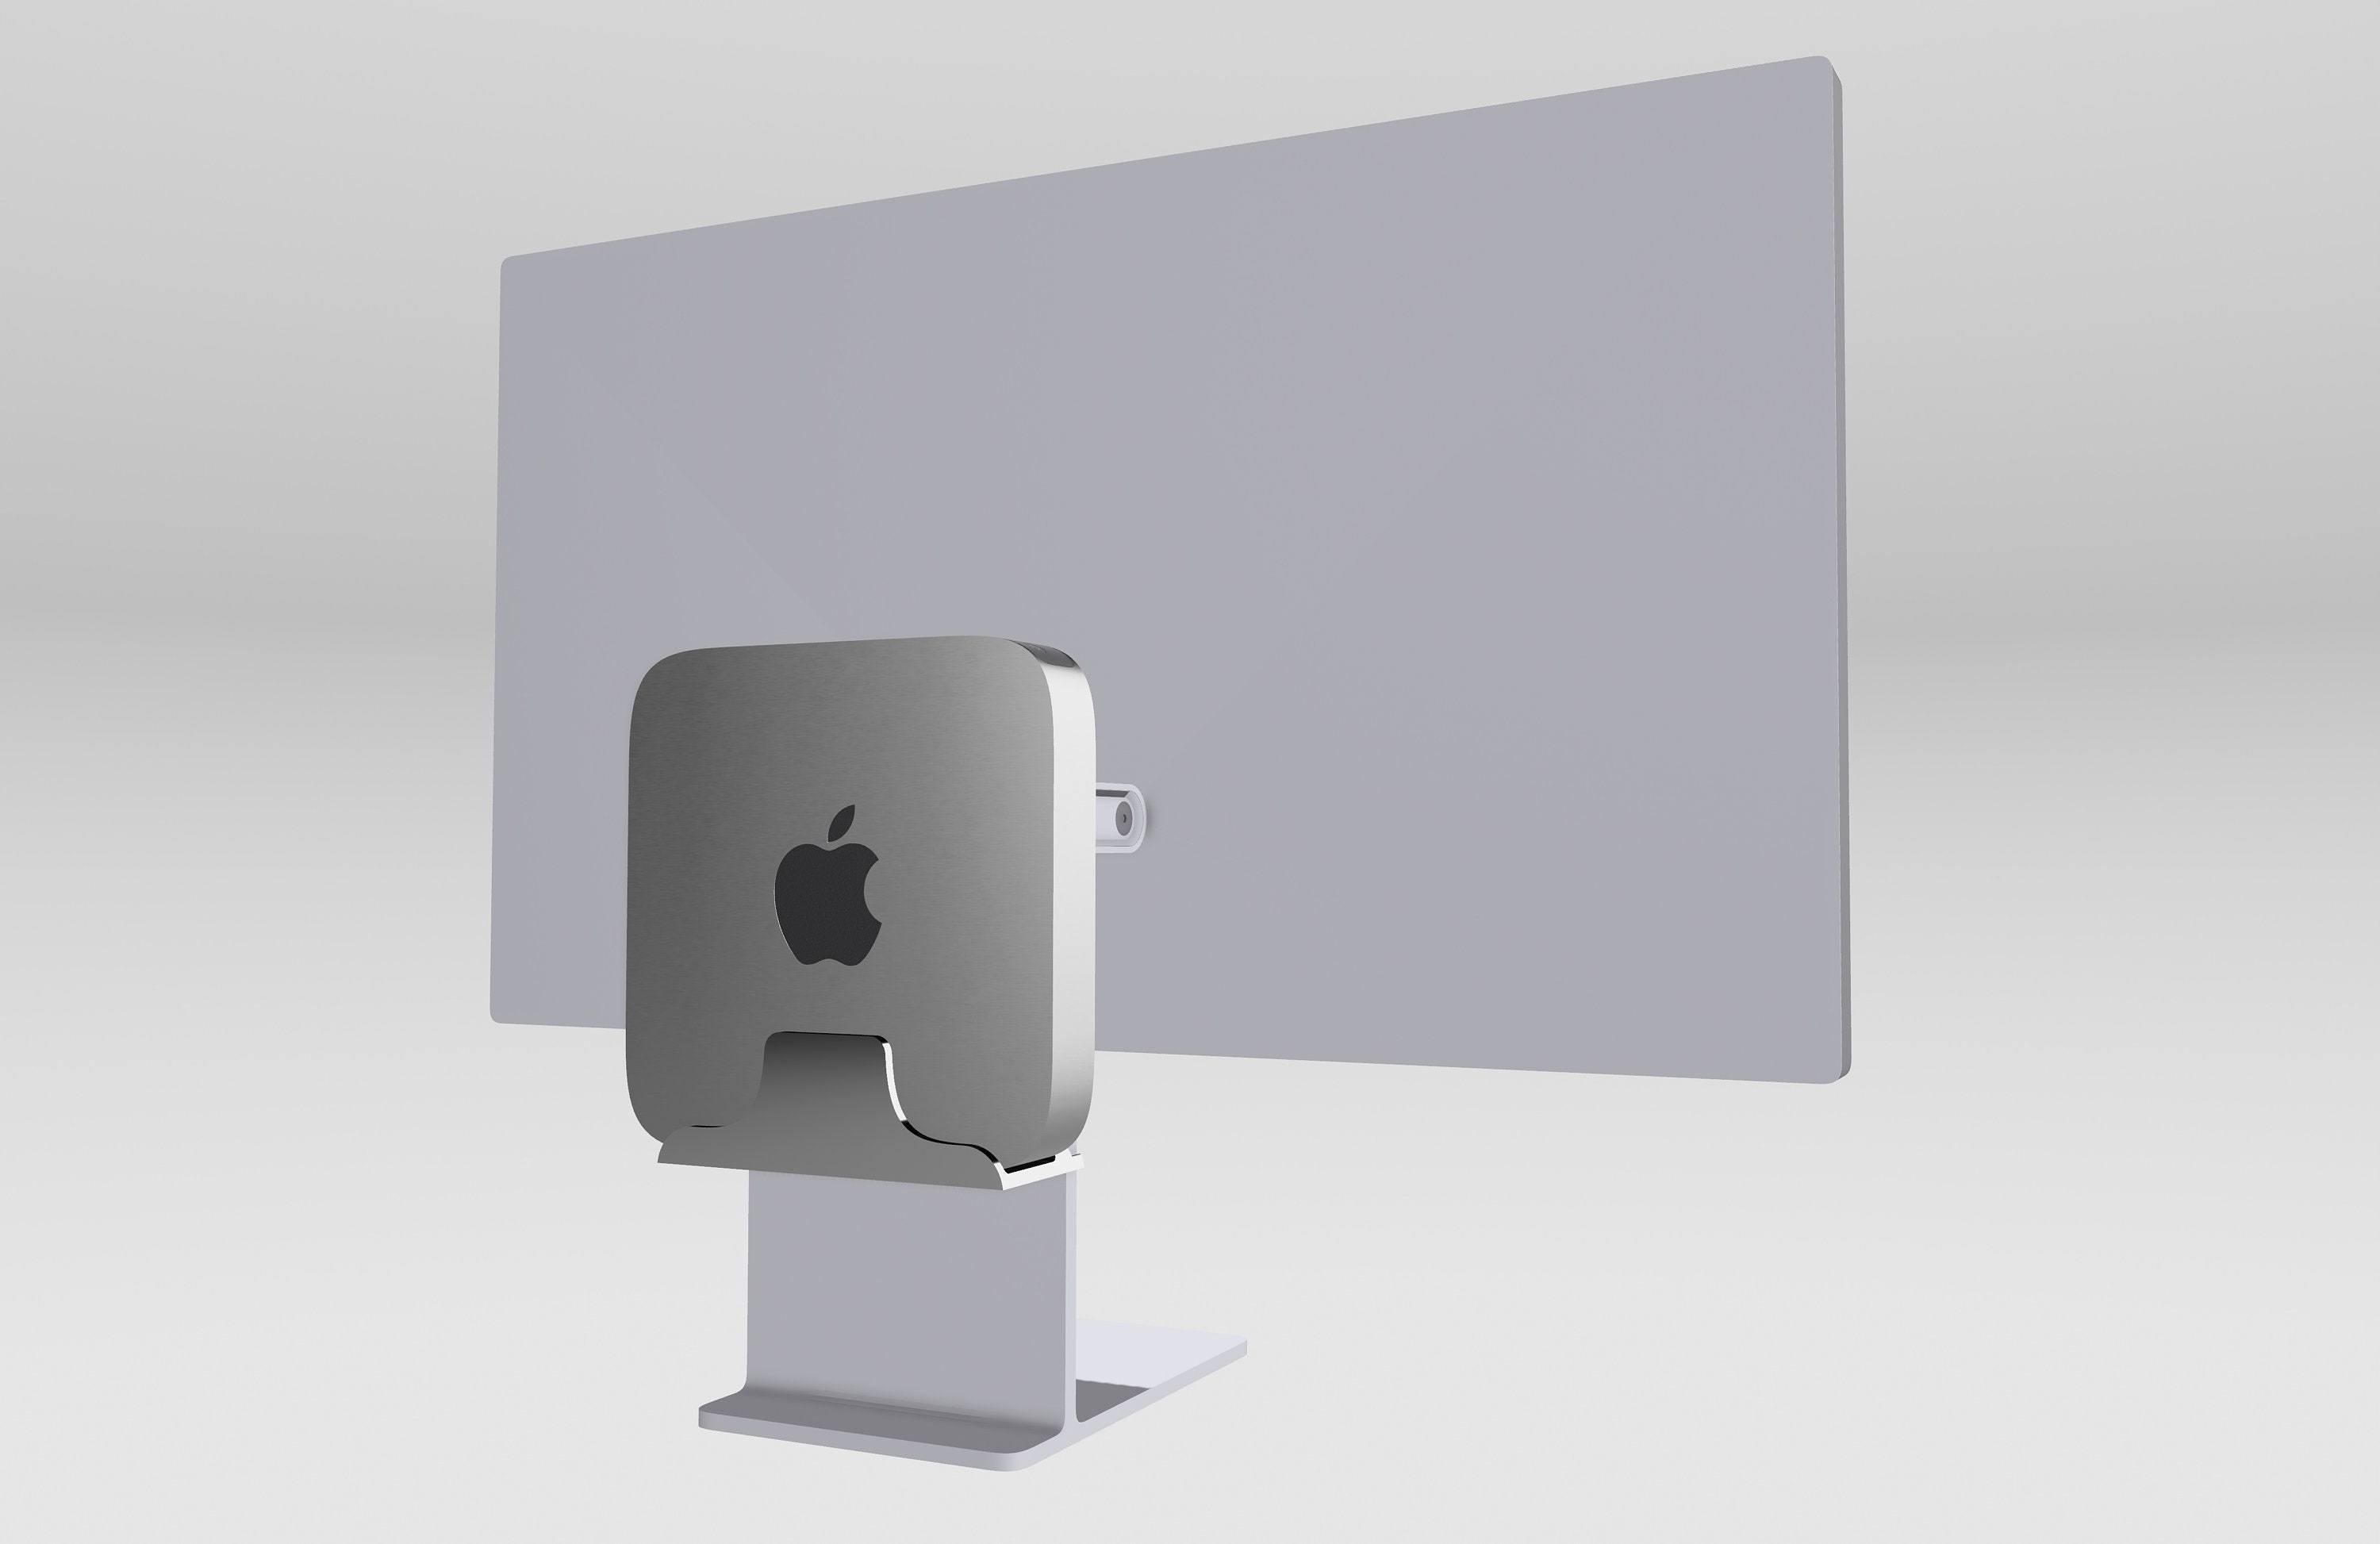 Support de bureau en alliage pour Mac mini, support vertical en aluminium  avec pieds en caoutchouc antidérapants compatibles